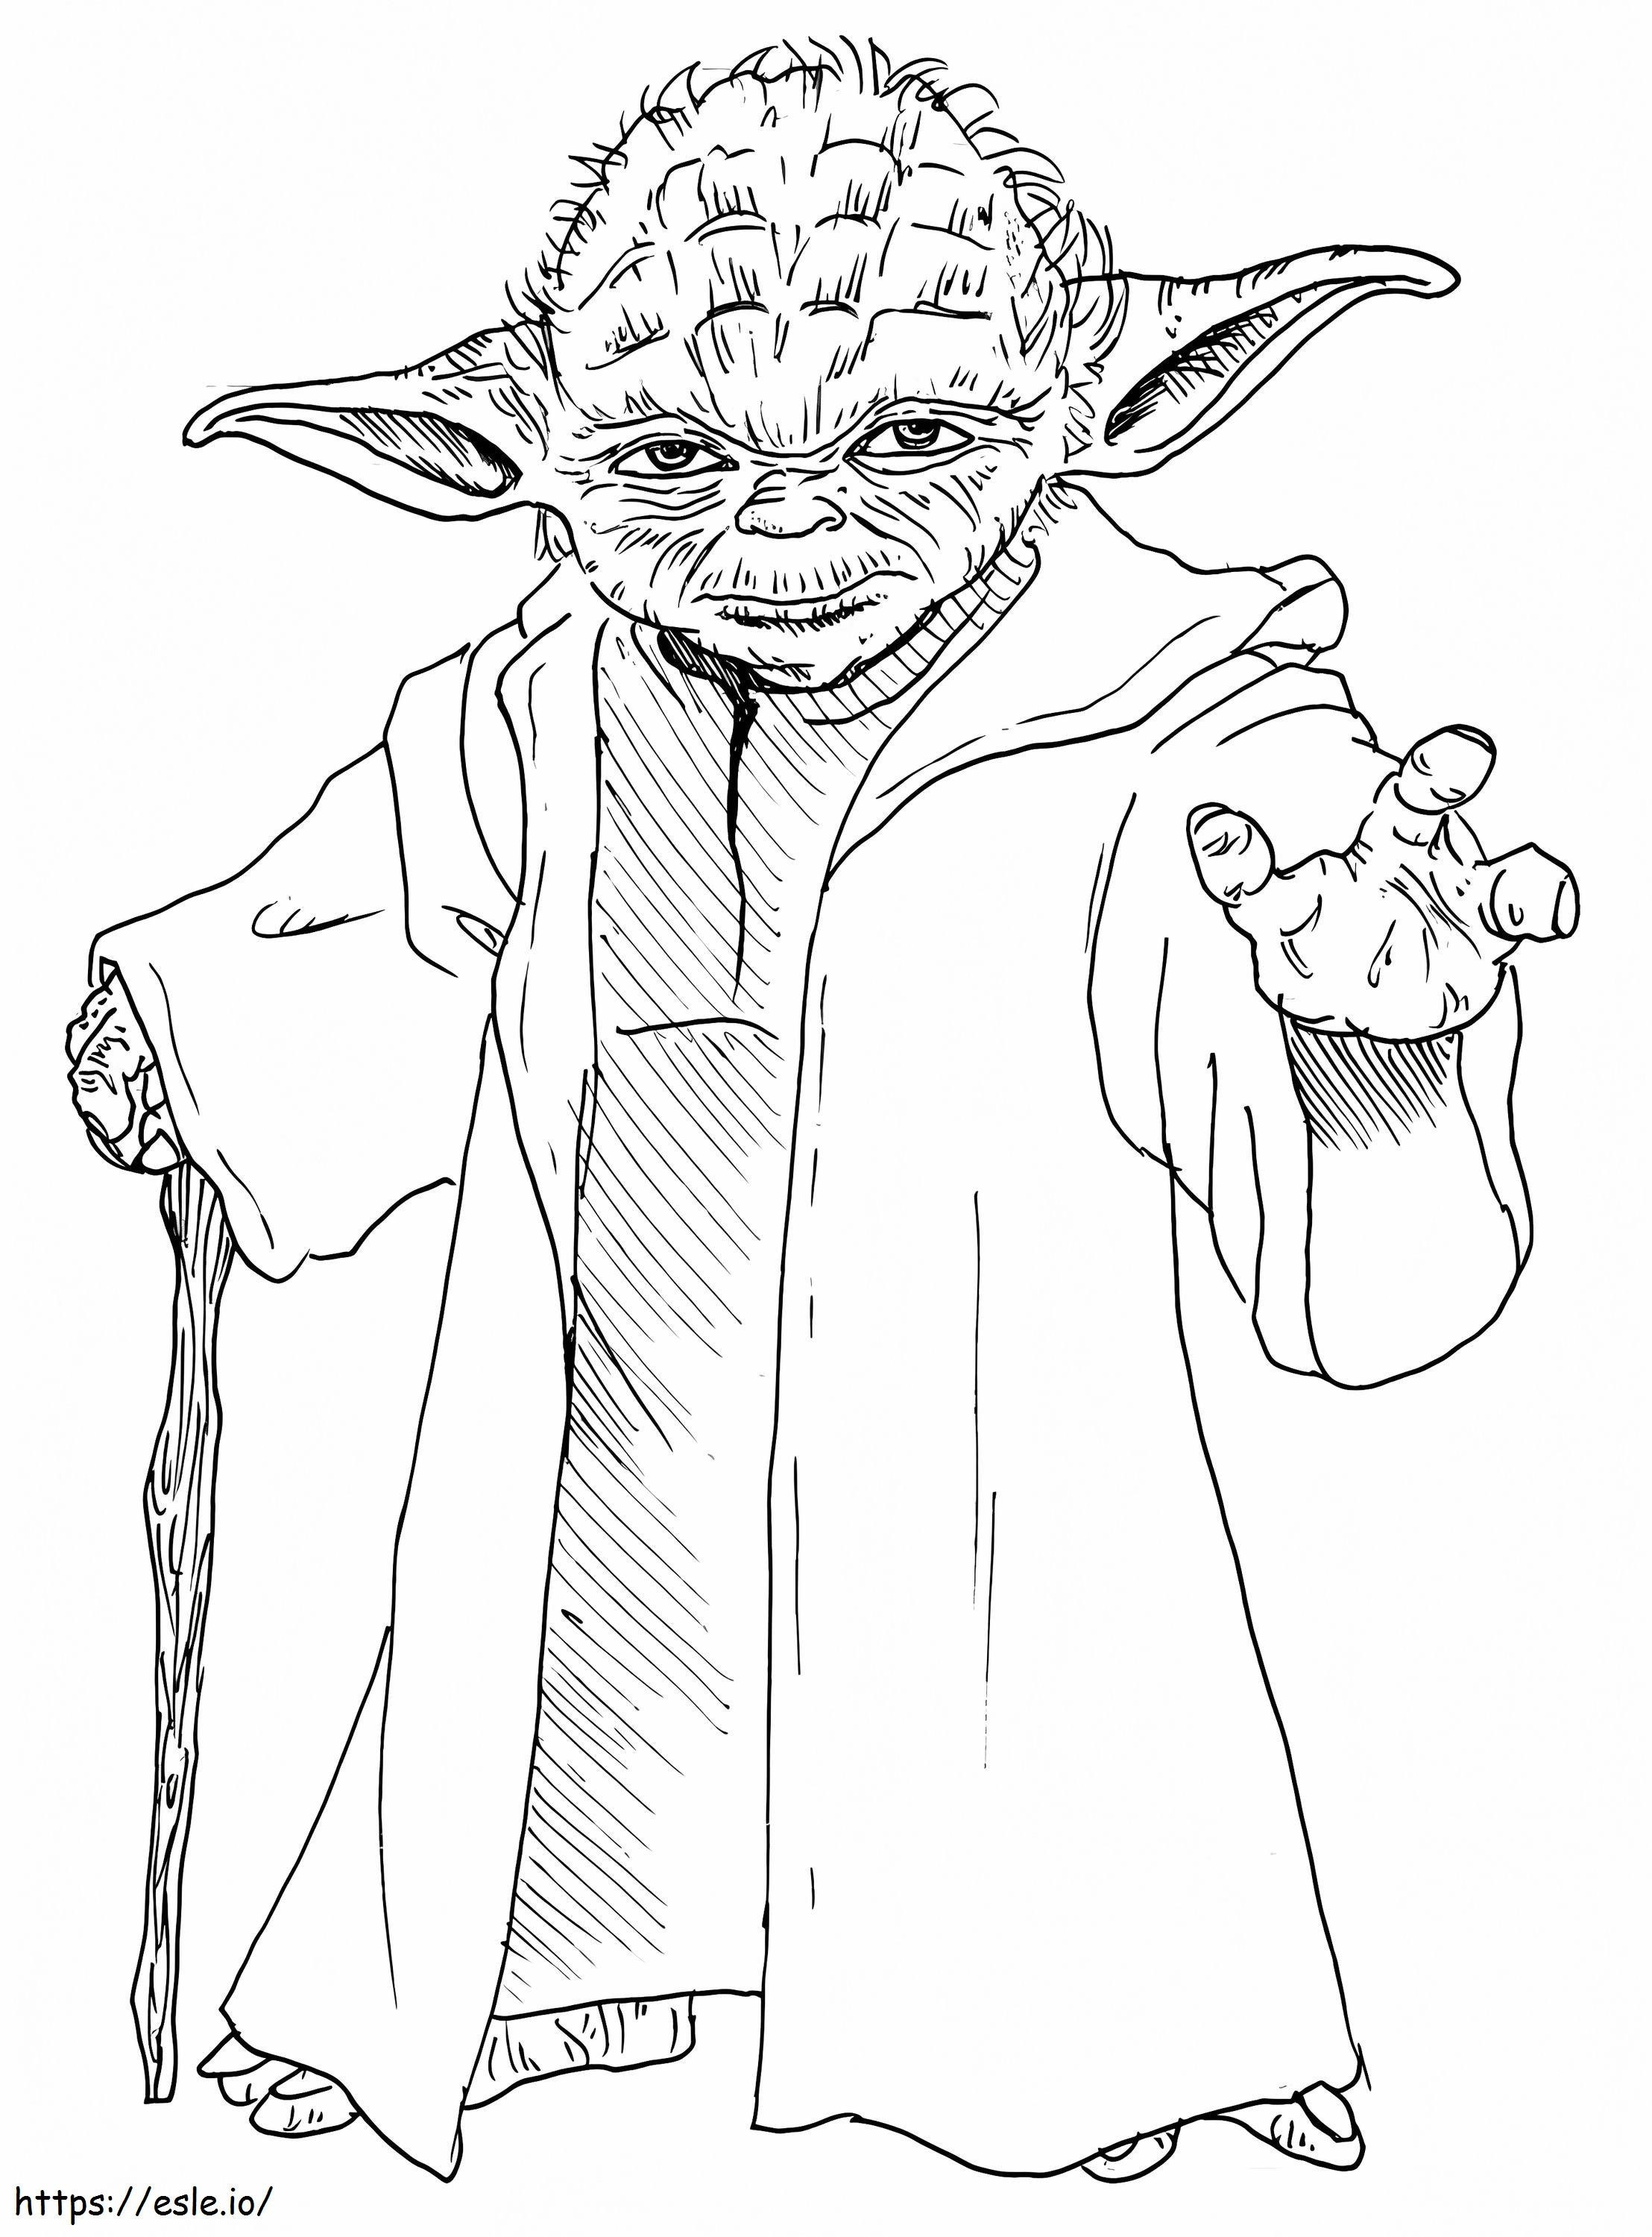 Mistrz Yoda z Gwiezdnych Wojen kolorowanka